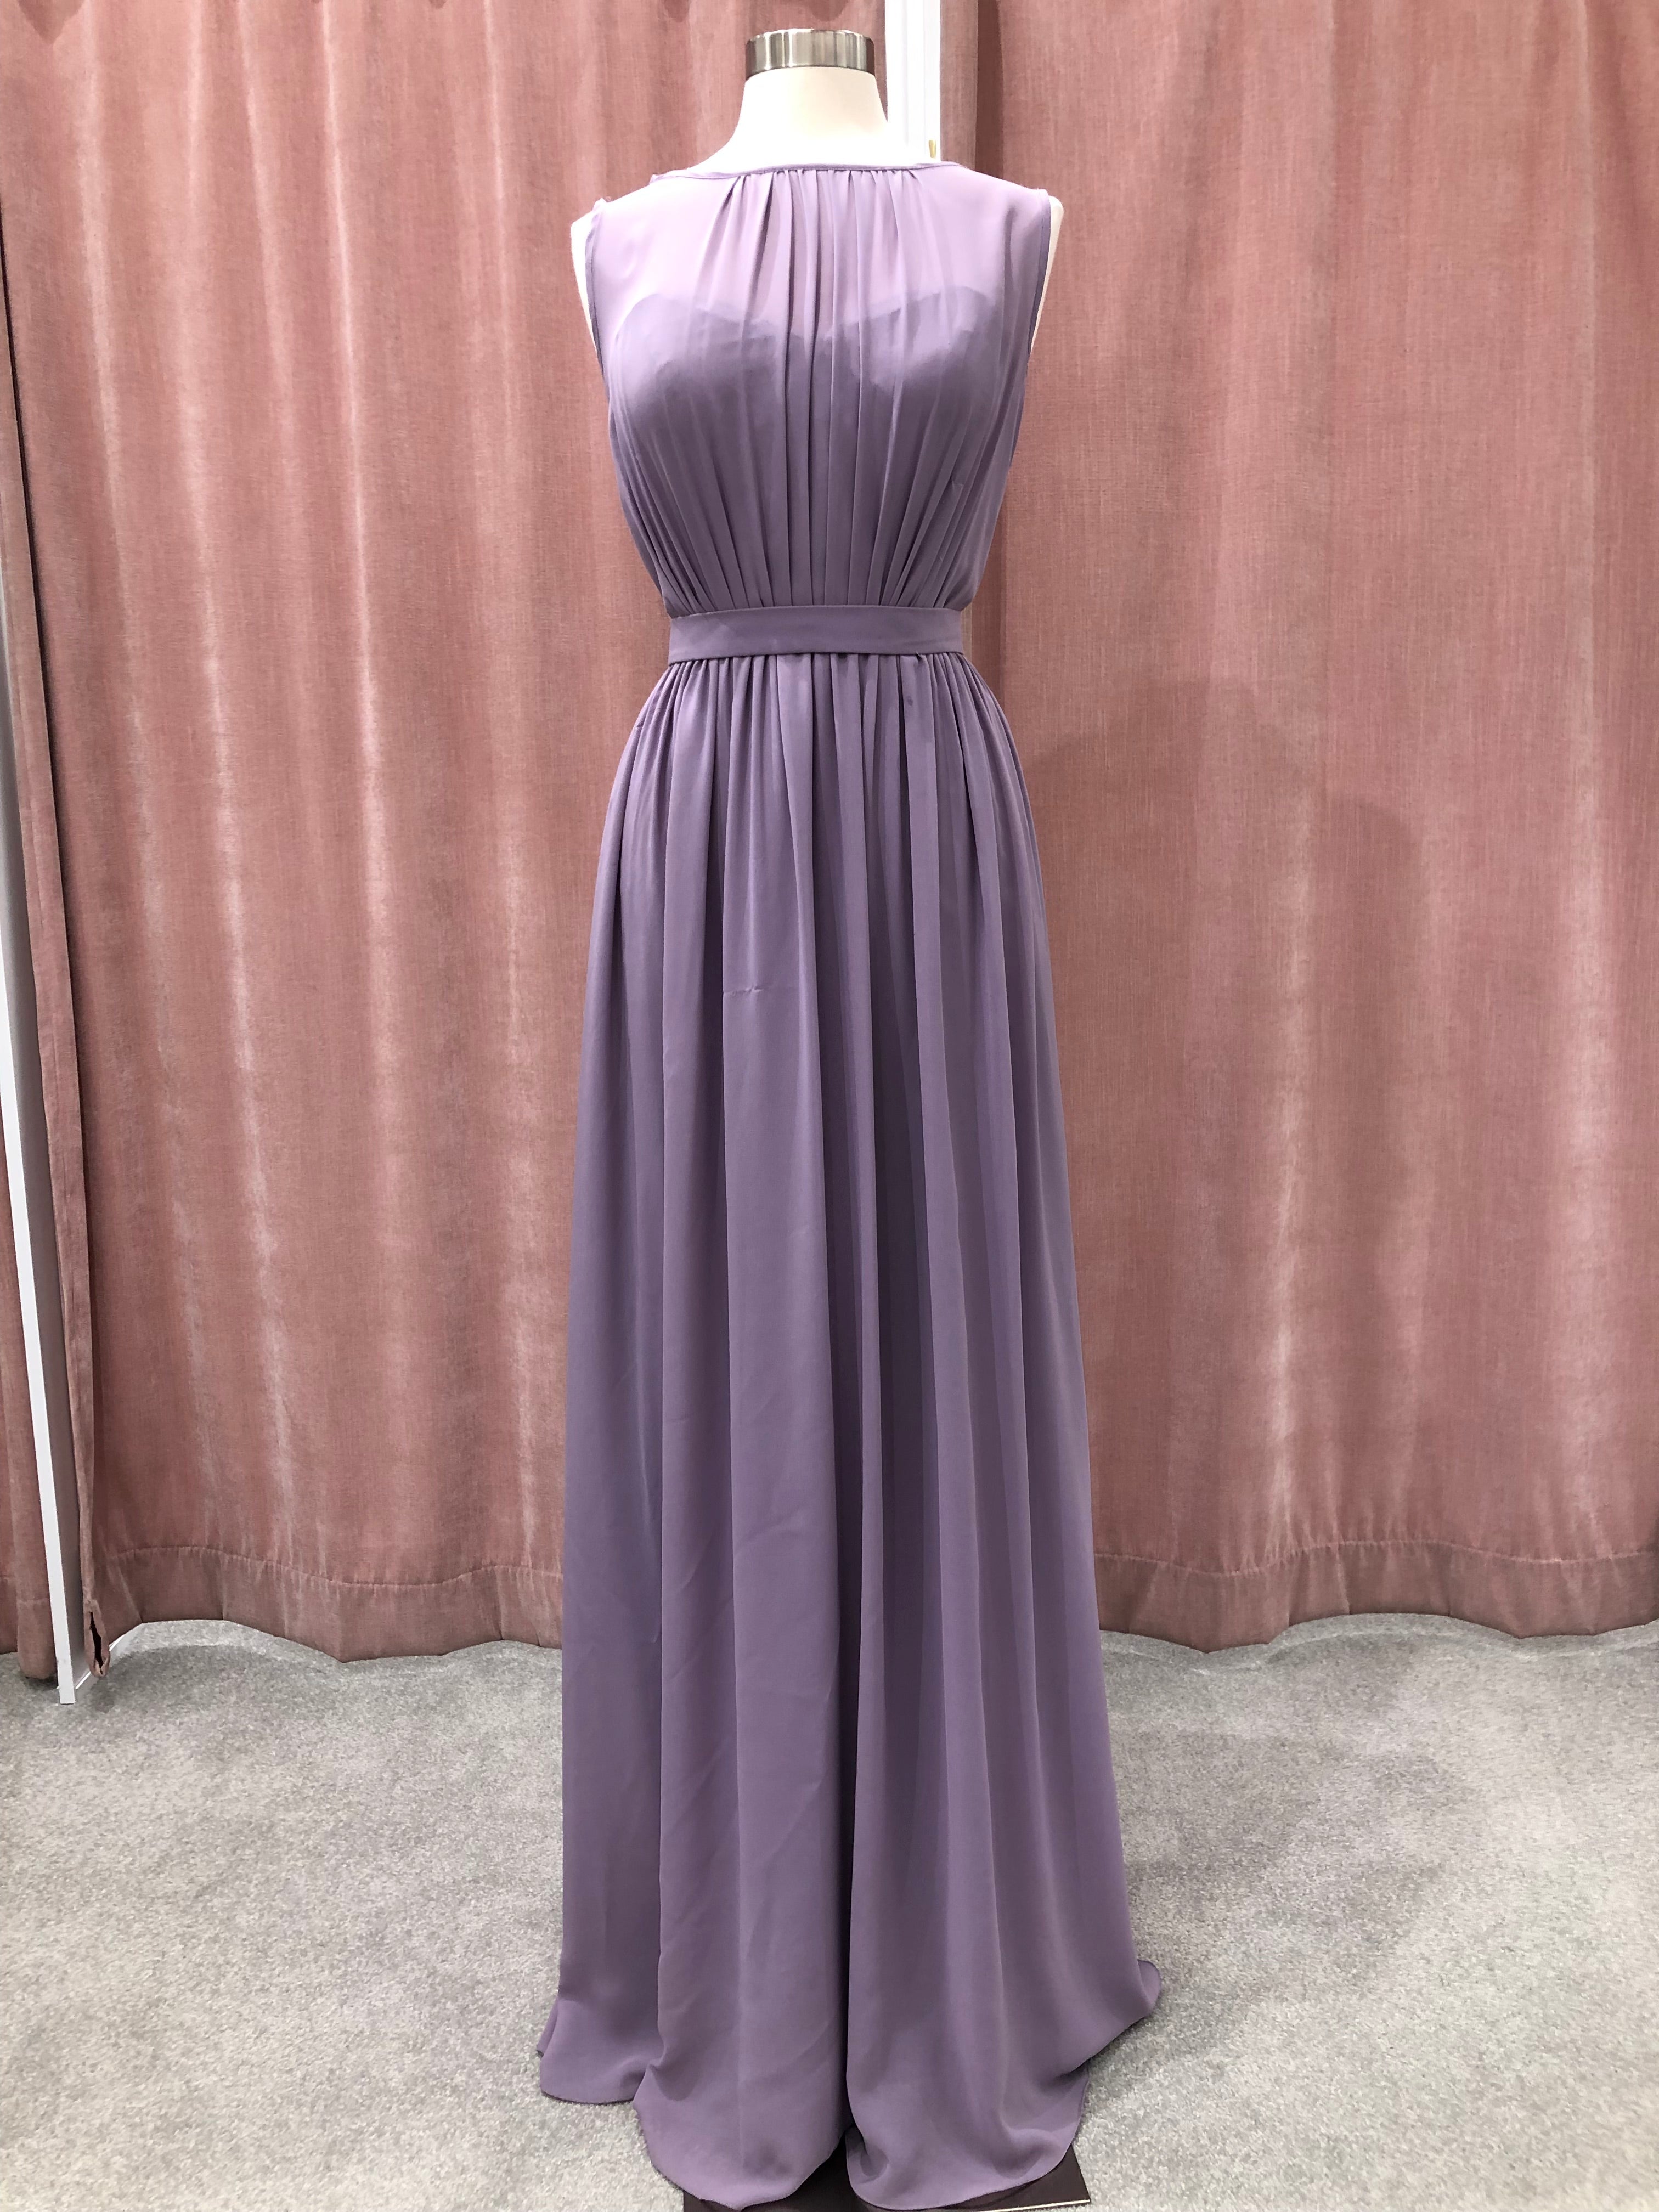 Lilac chiffon dress size 8